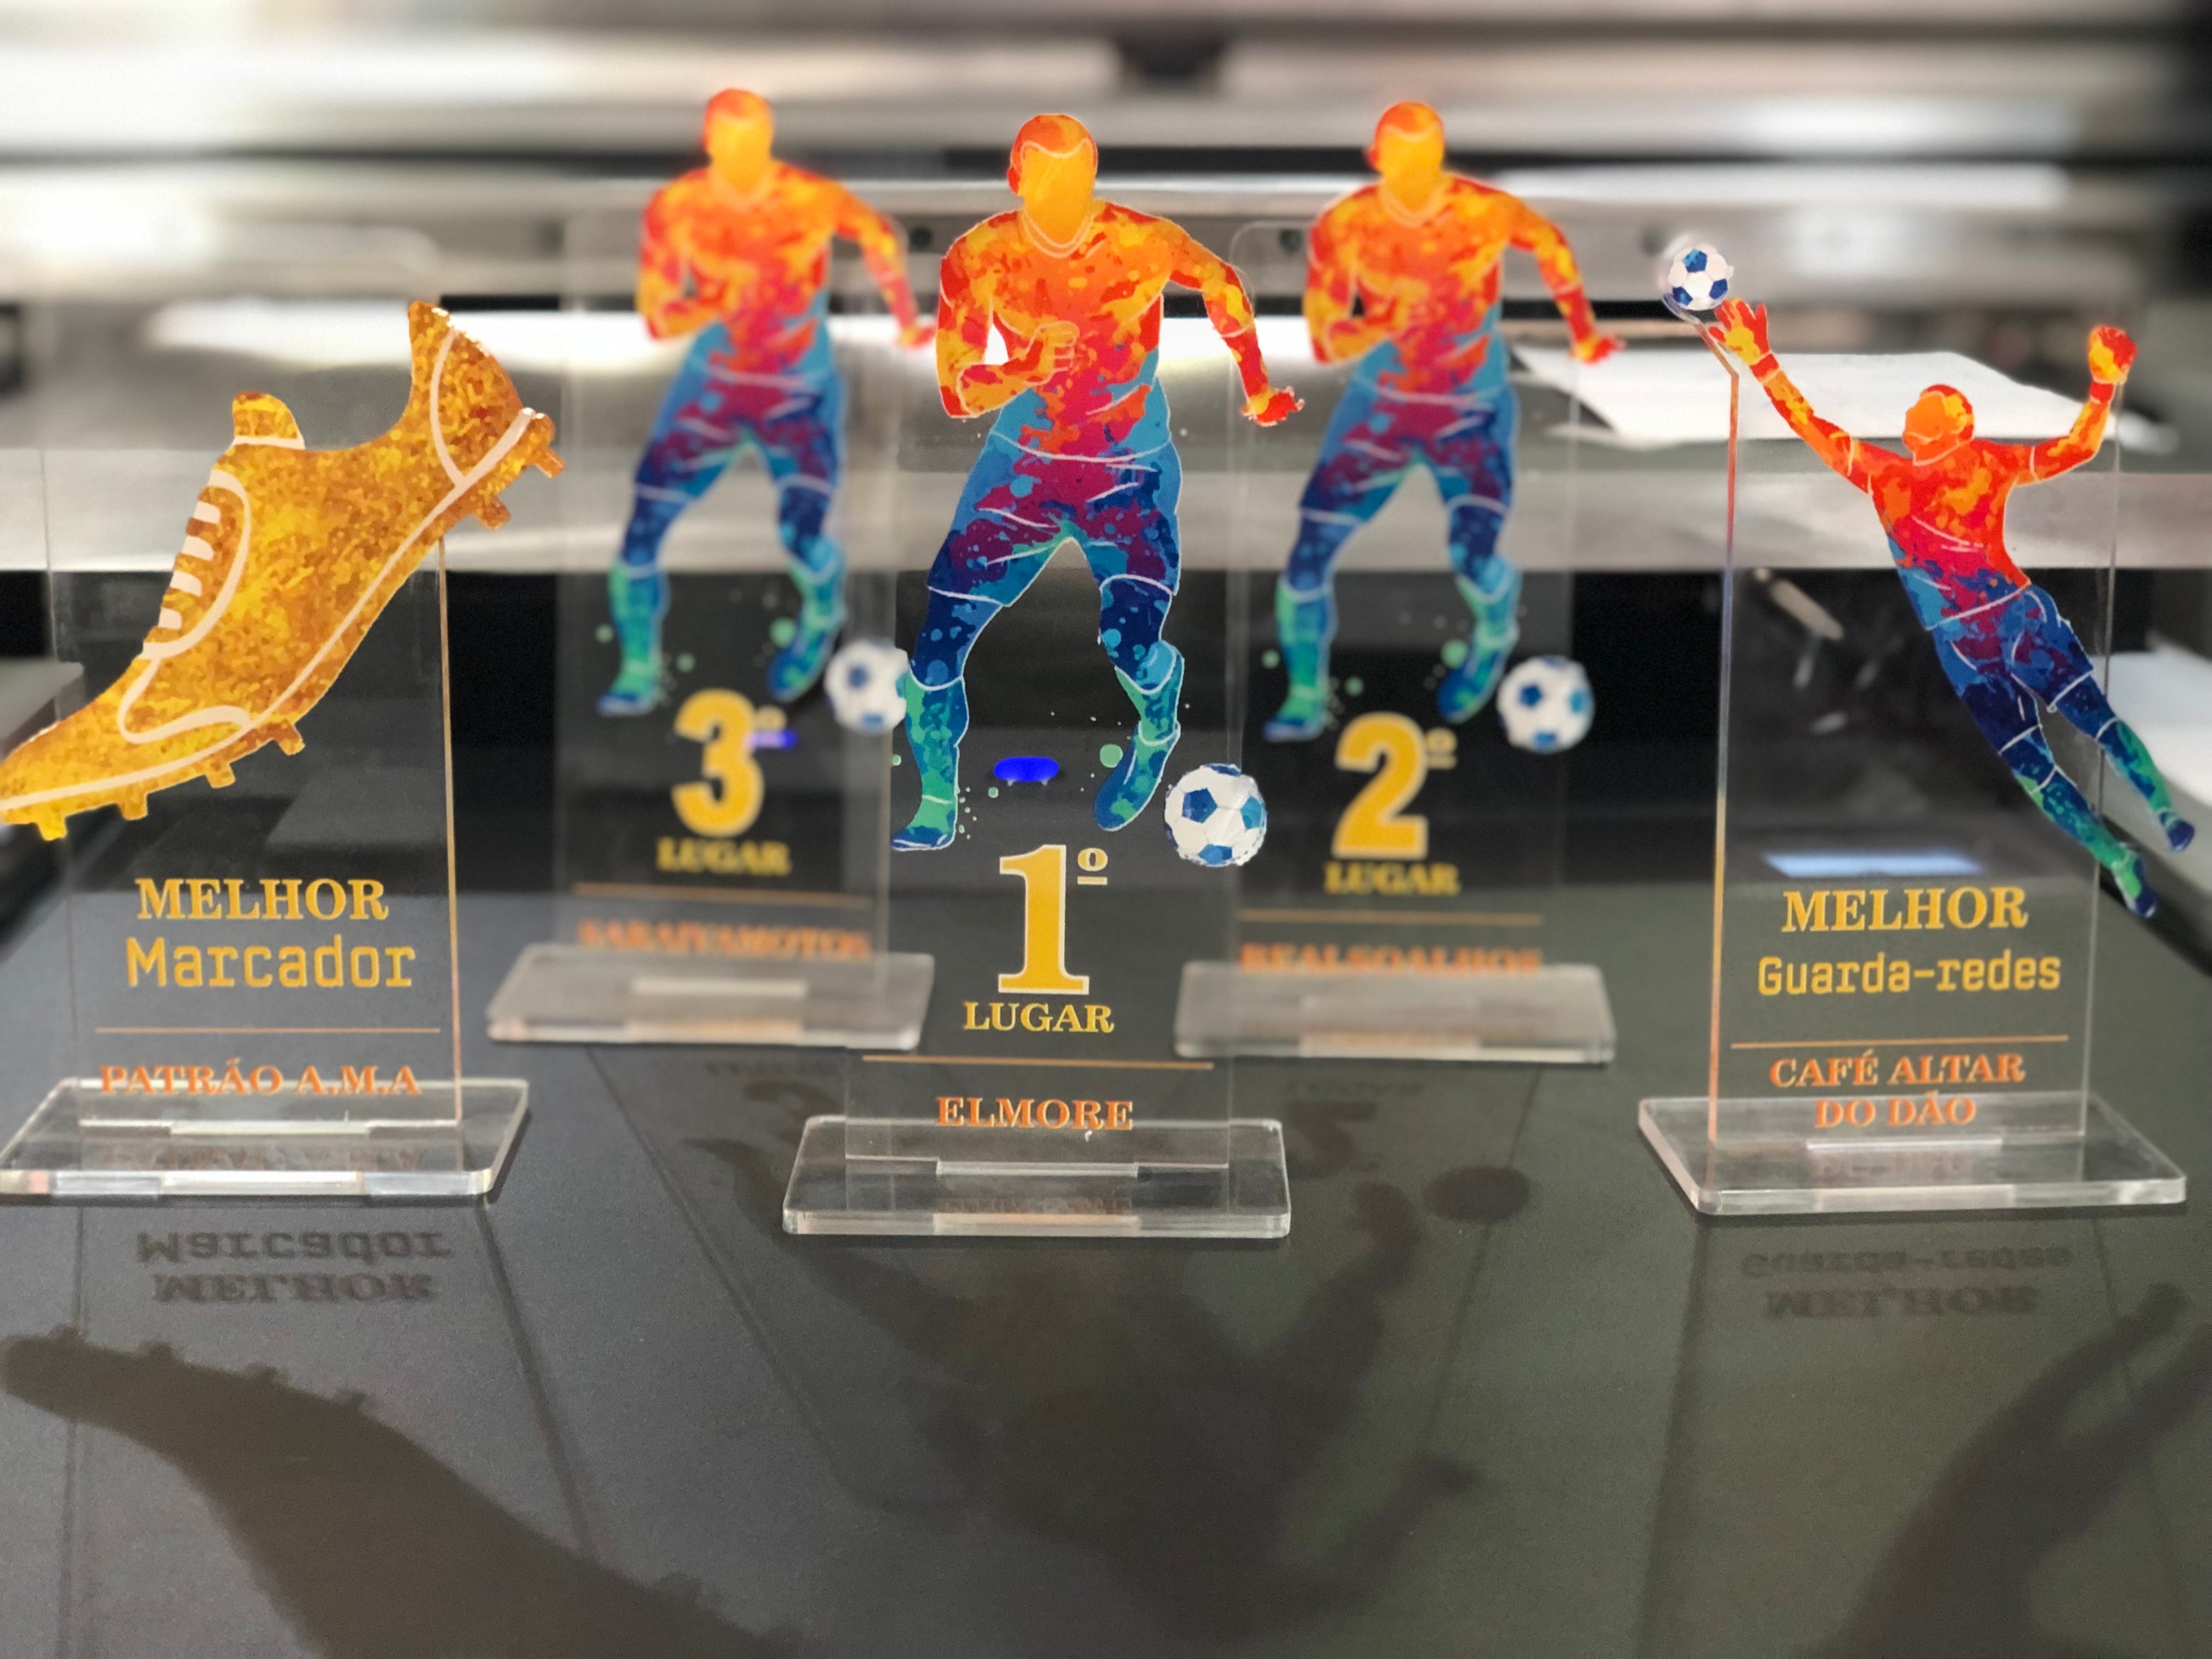 Kit 5 Troféus de futebol gravação UV - 1,2,3 lugar - Melhor marcador e melhor guarda-redes.